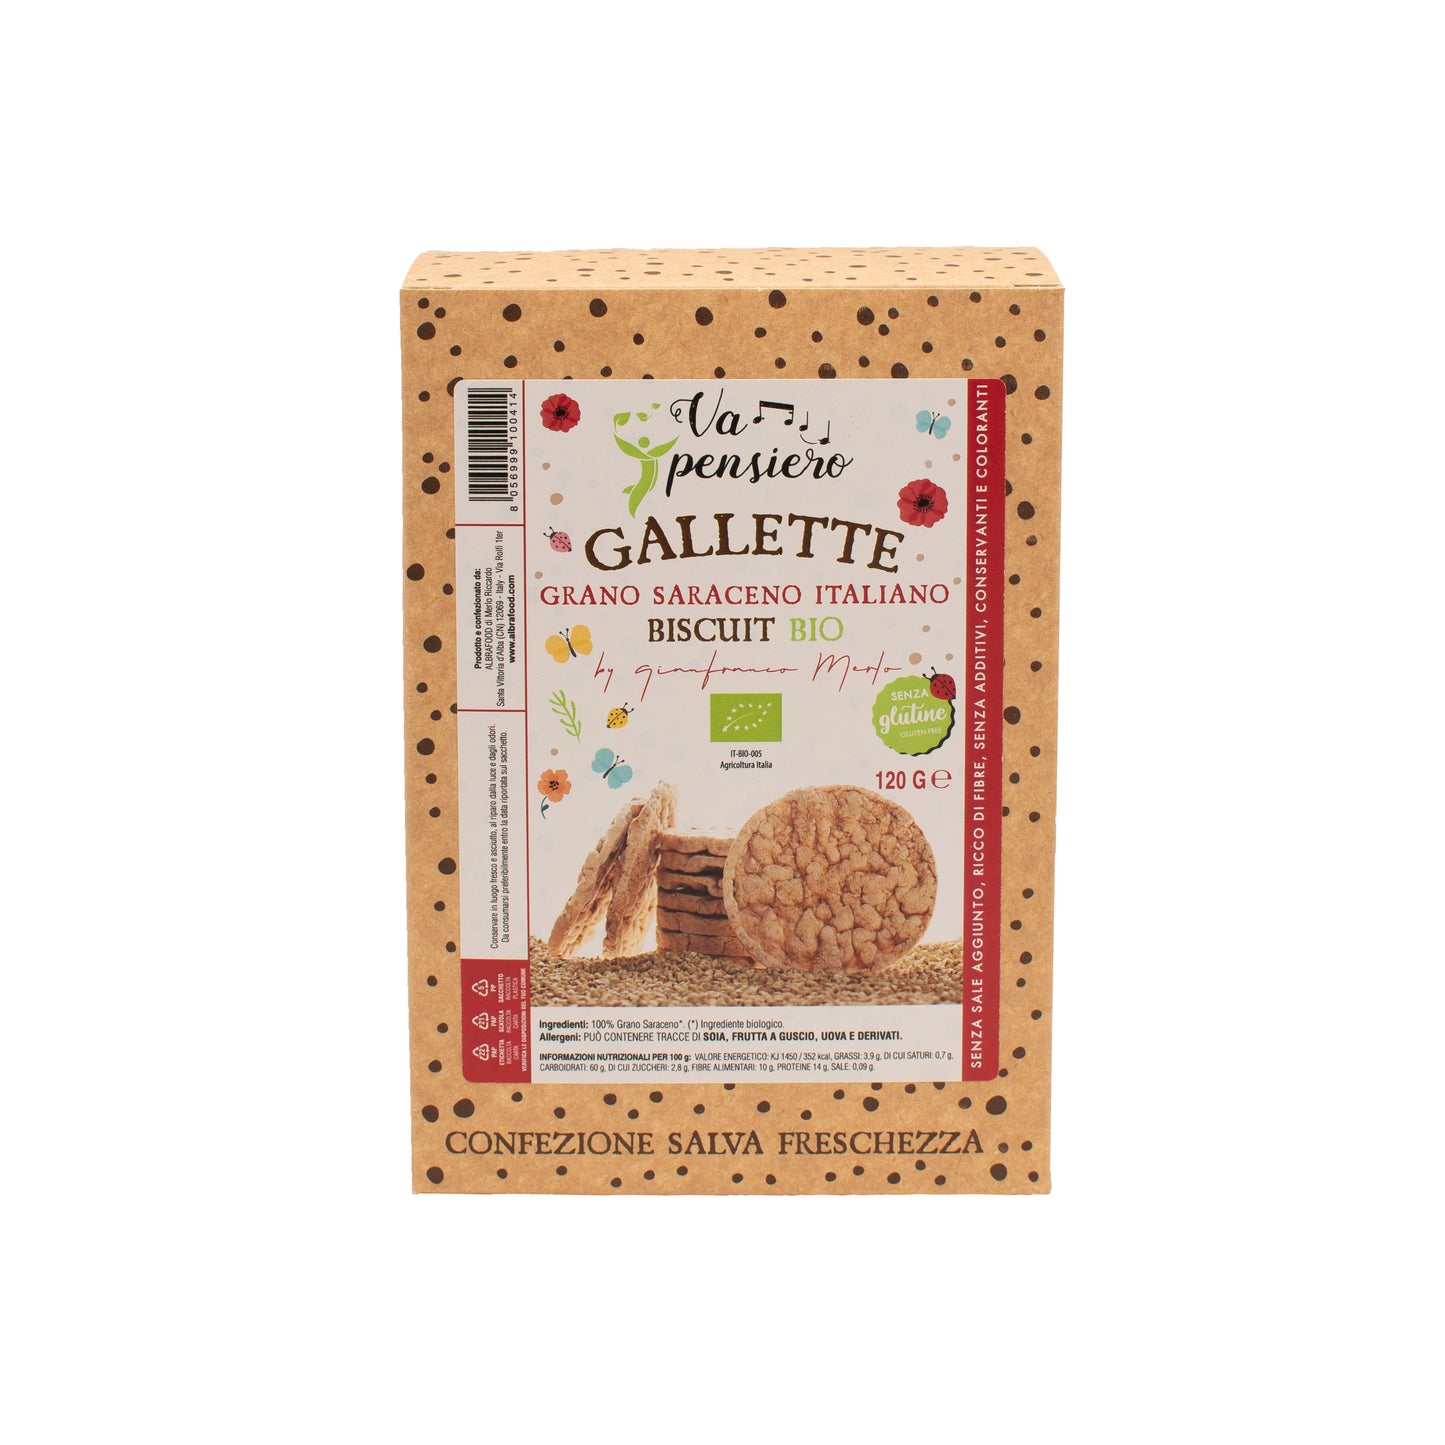 Gallette di grano saraceno italiano biscuit bio da 120g. Prodotto biologico, agricoltura Italia.